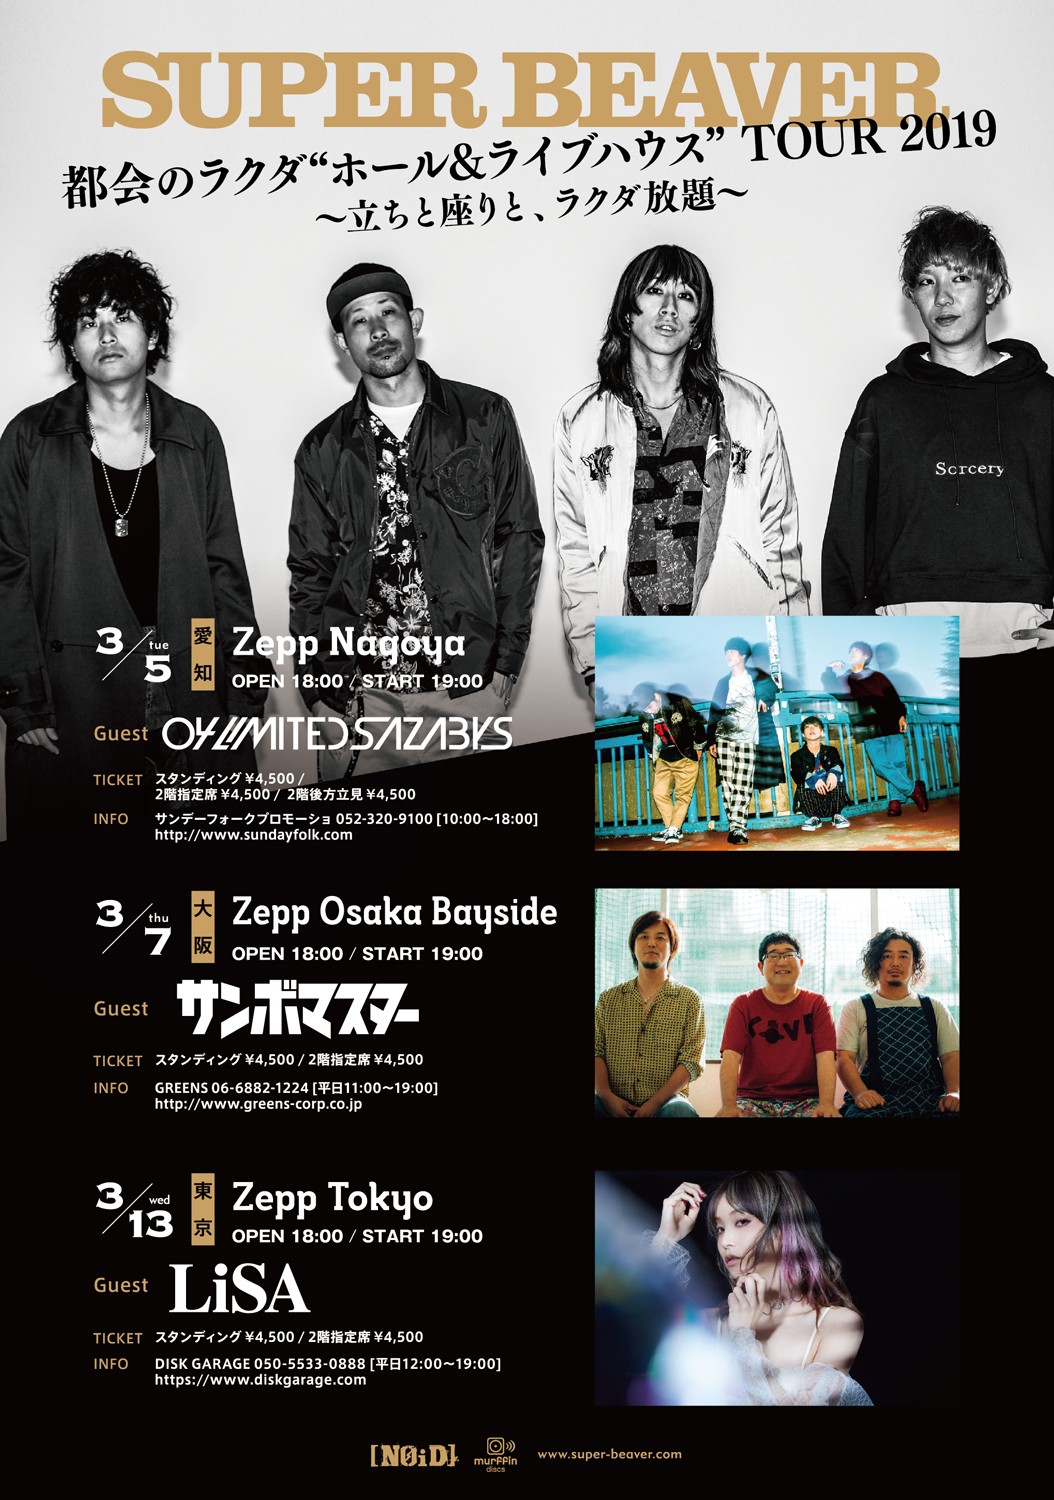 【愛知】SUPER BEAVER『都会のラクダ "ホール＆ライブハウス" TOUR 2019〜』(Zepp Nagoya)